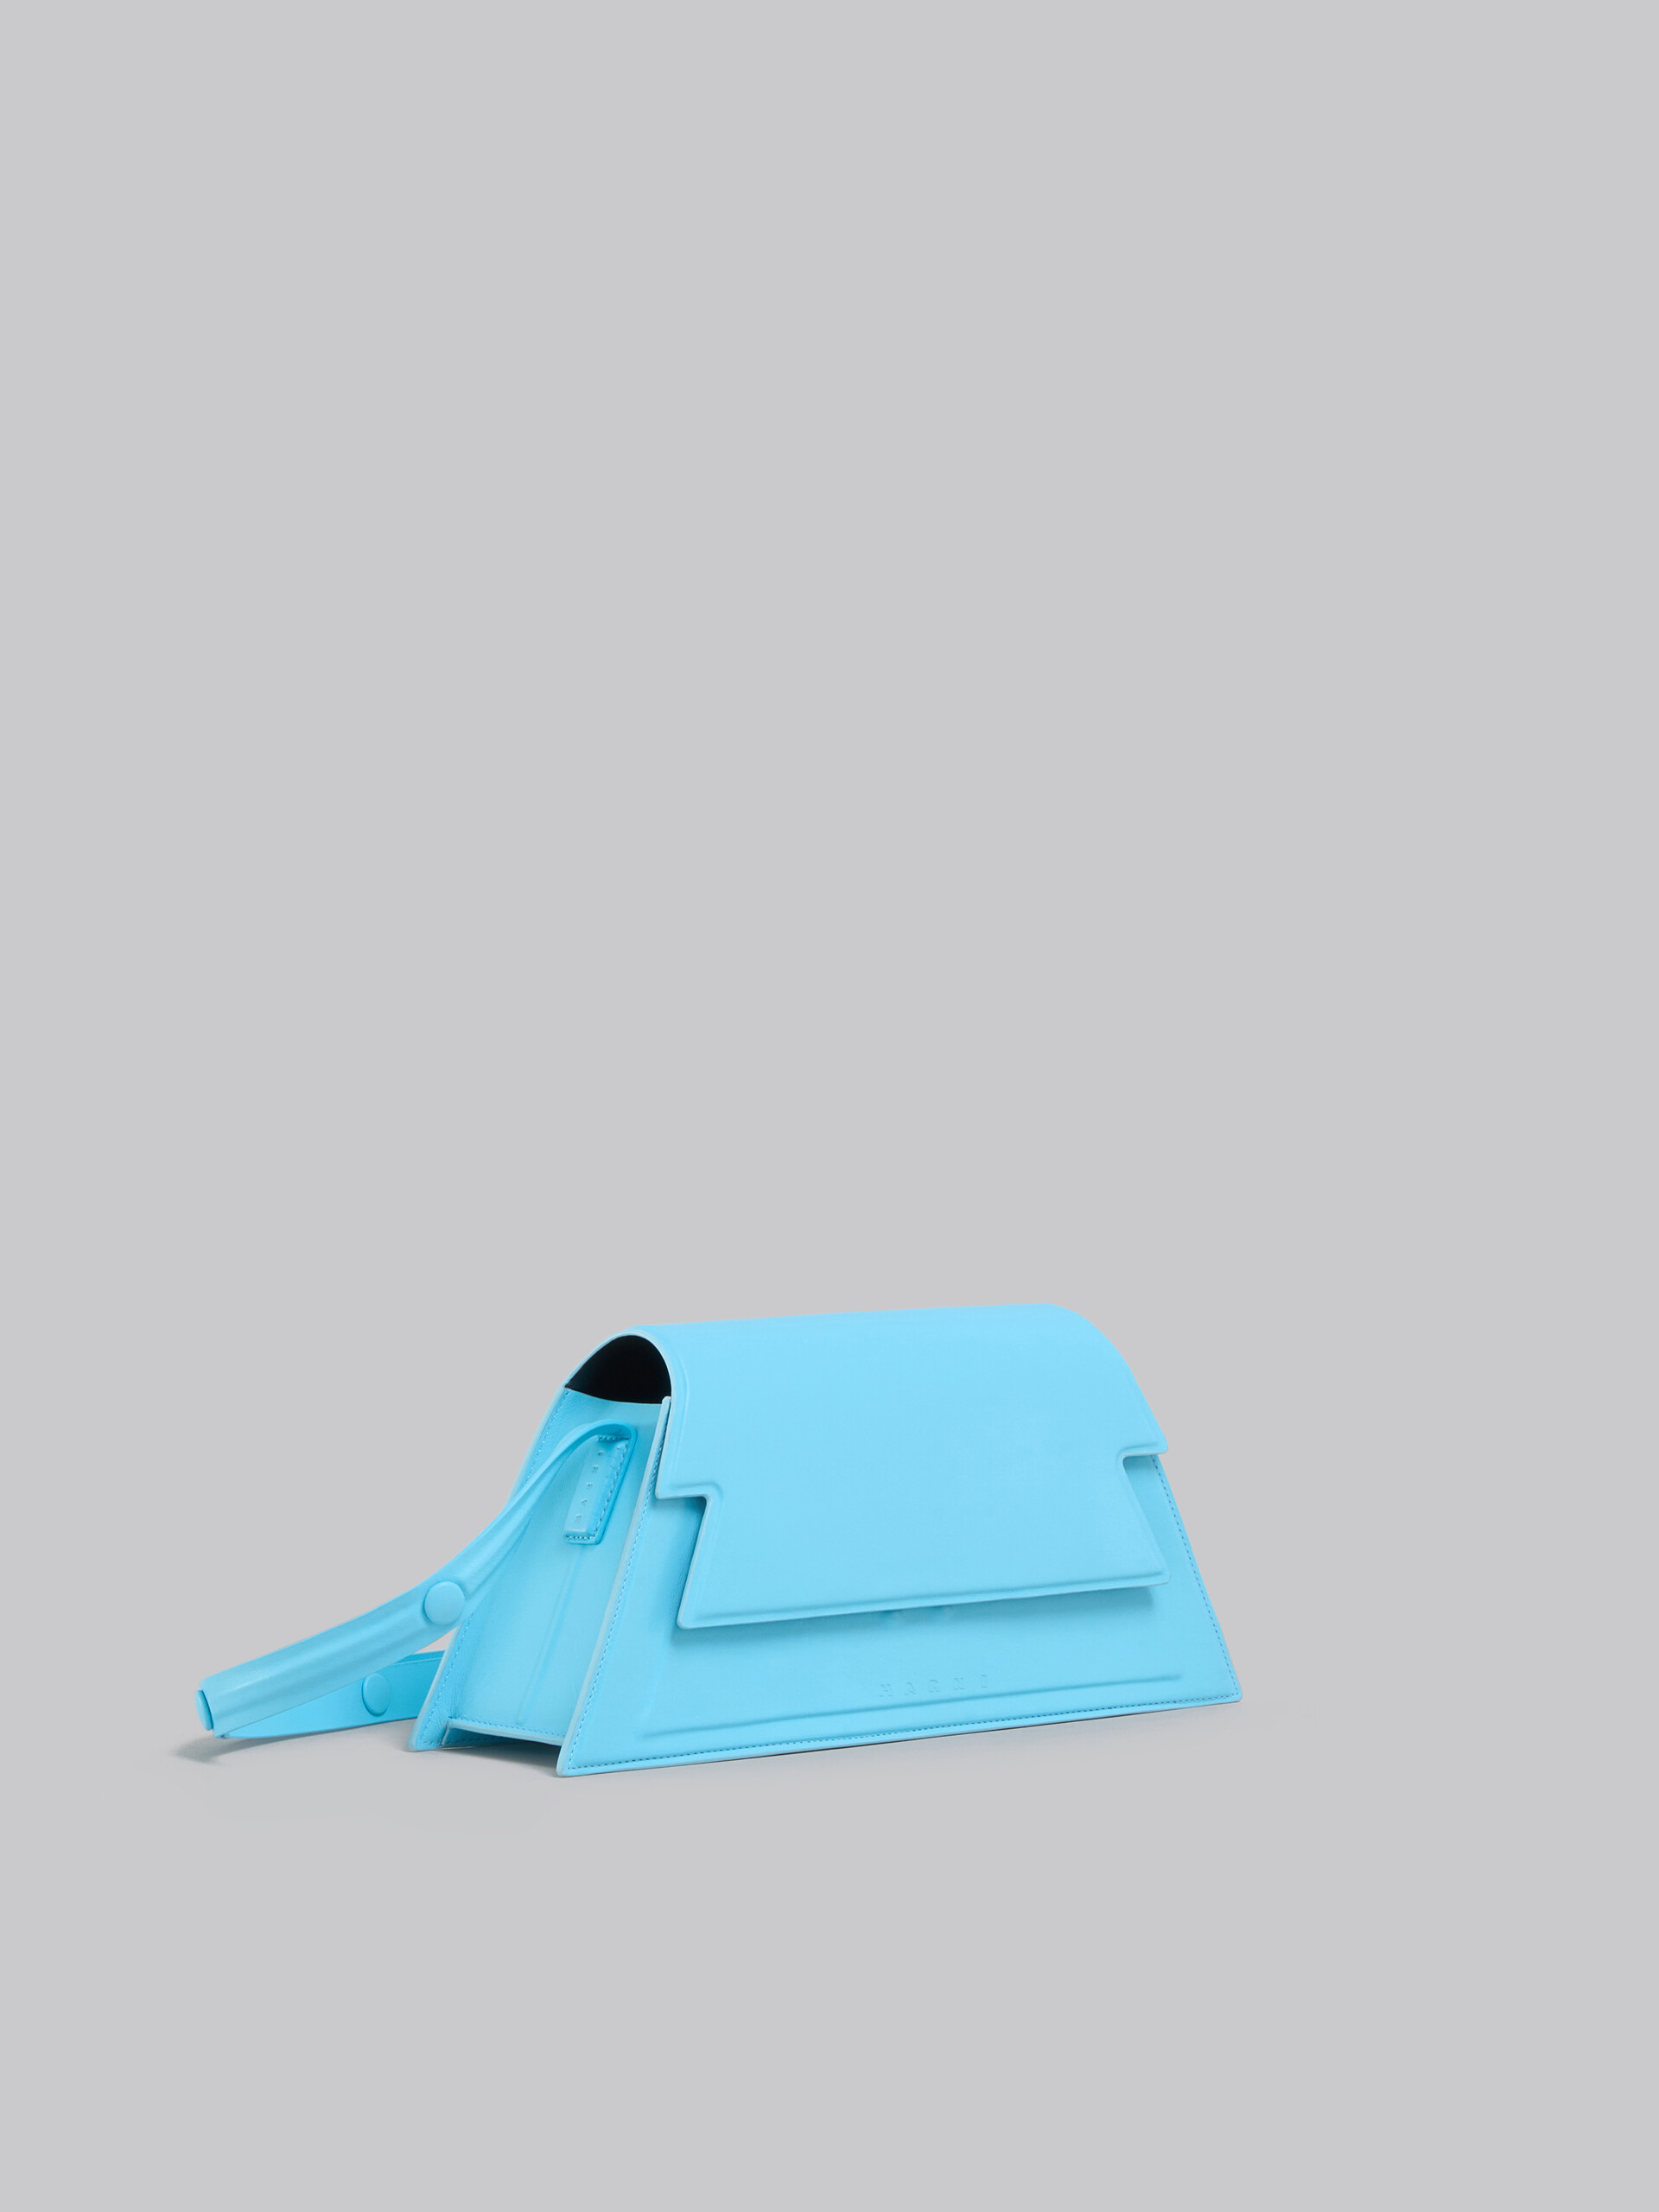 Sac Trunkoise de taille moyenne en cuir lisse bleu clair - Sacs portés épaule - Image 5